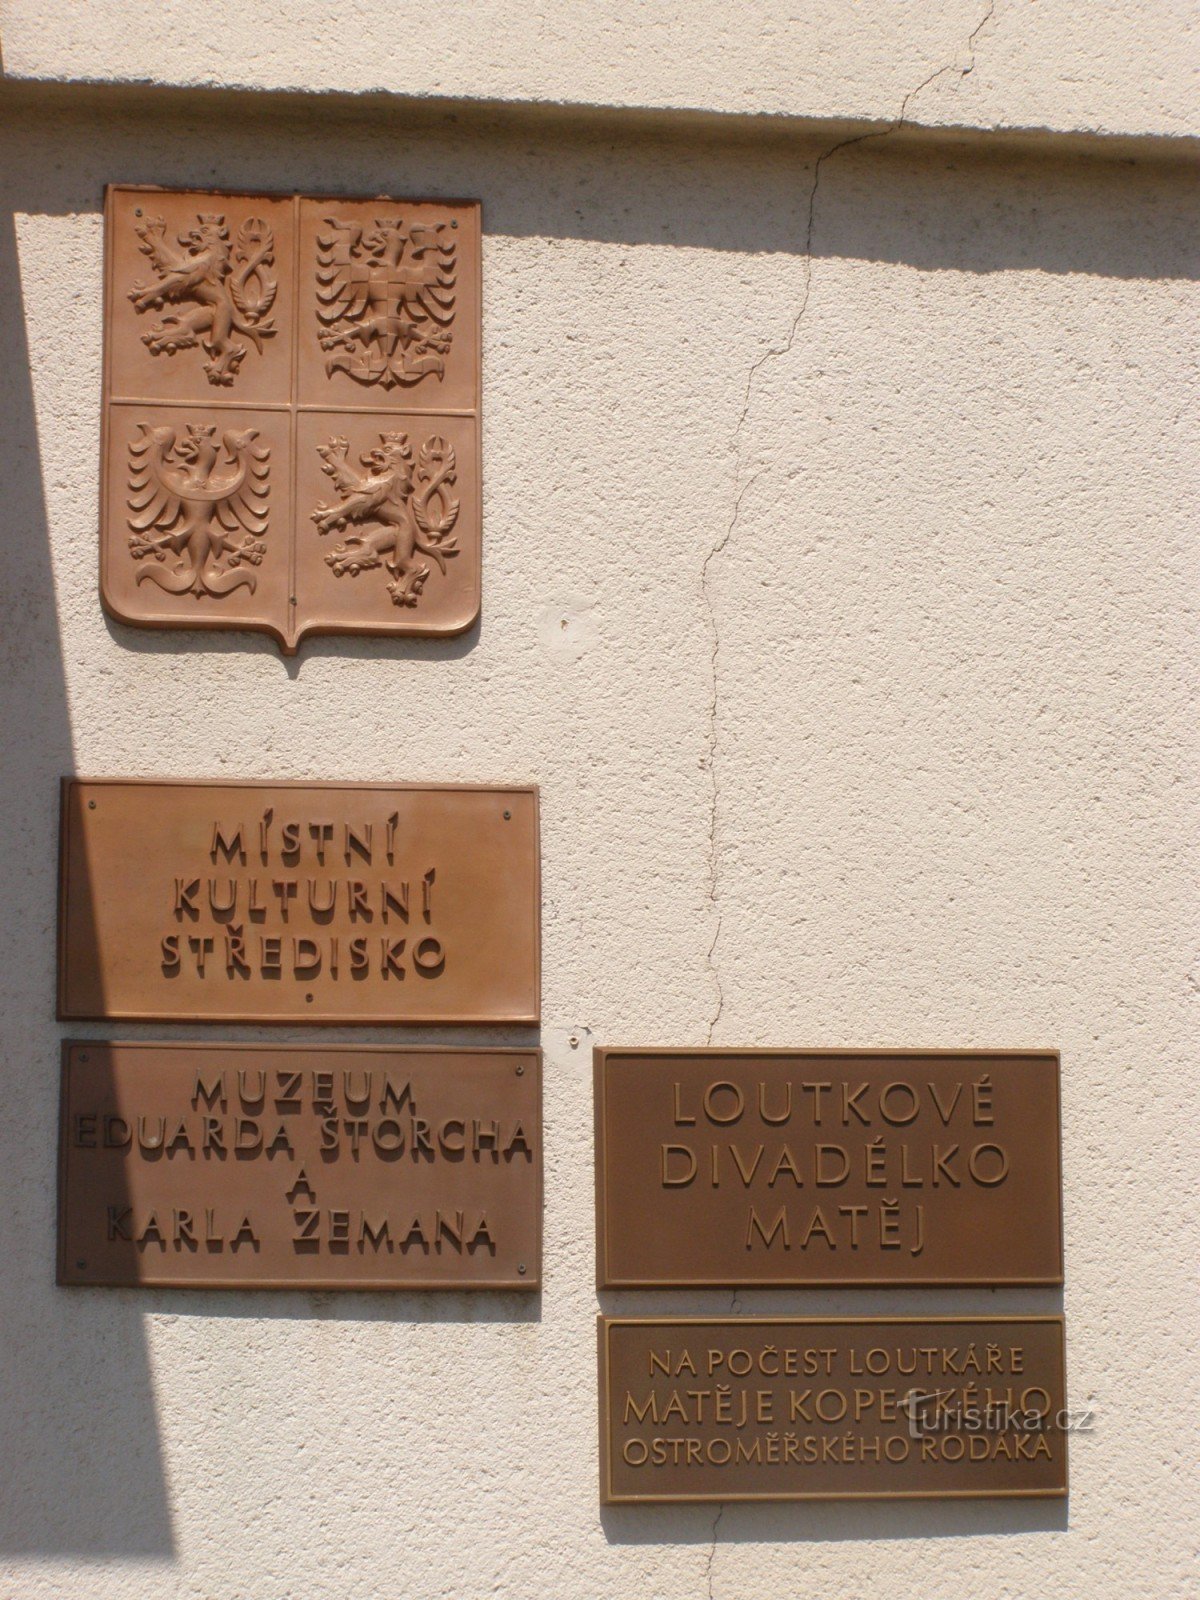 Ostroměř - muzeul lui Eduard Štorch și Karel Zeman